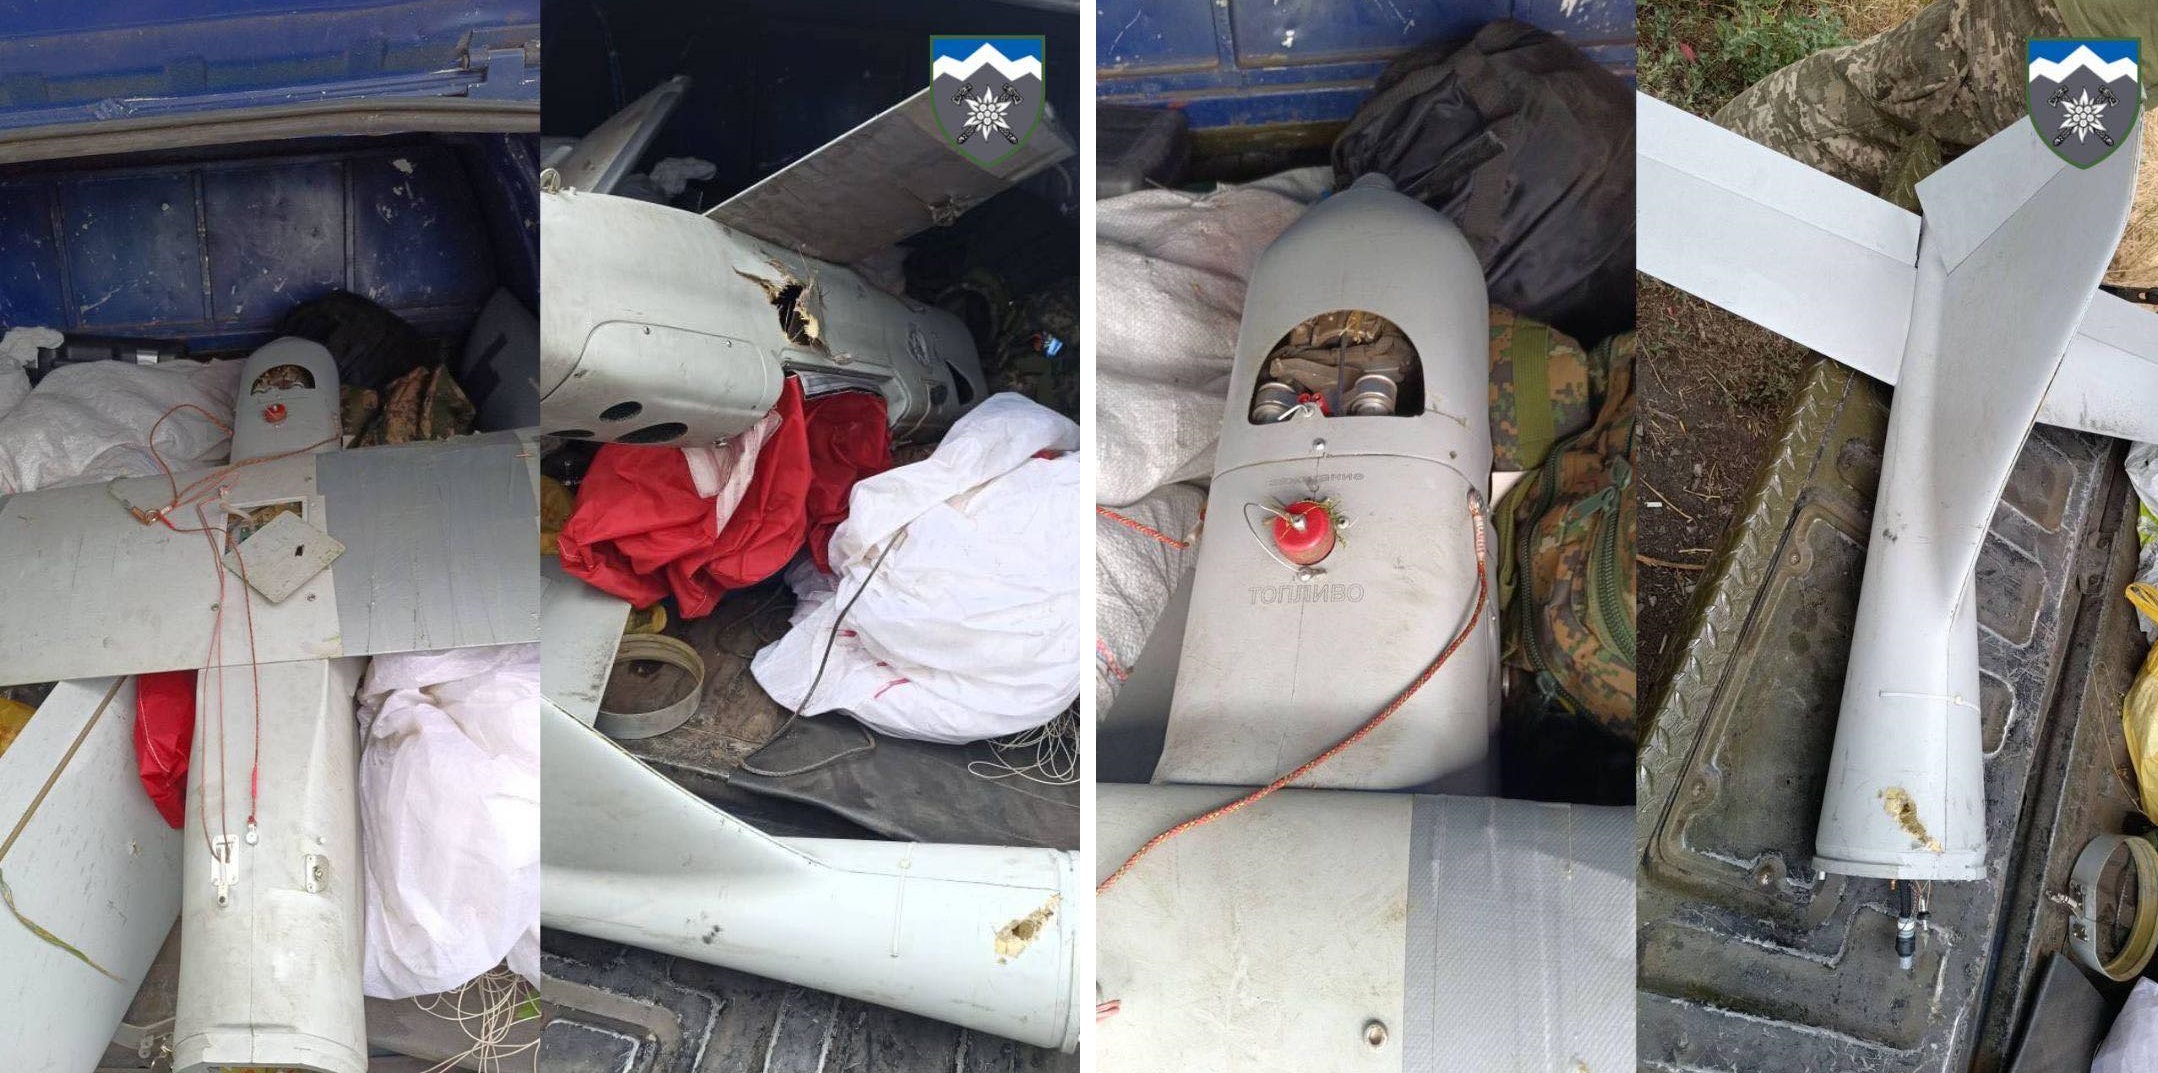 Wojownicy Sił Zbrojnych Ukrainy zestrzelili rosyjskiego drona rozpoznawczego z butelką zamiast strony paliwowej